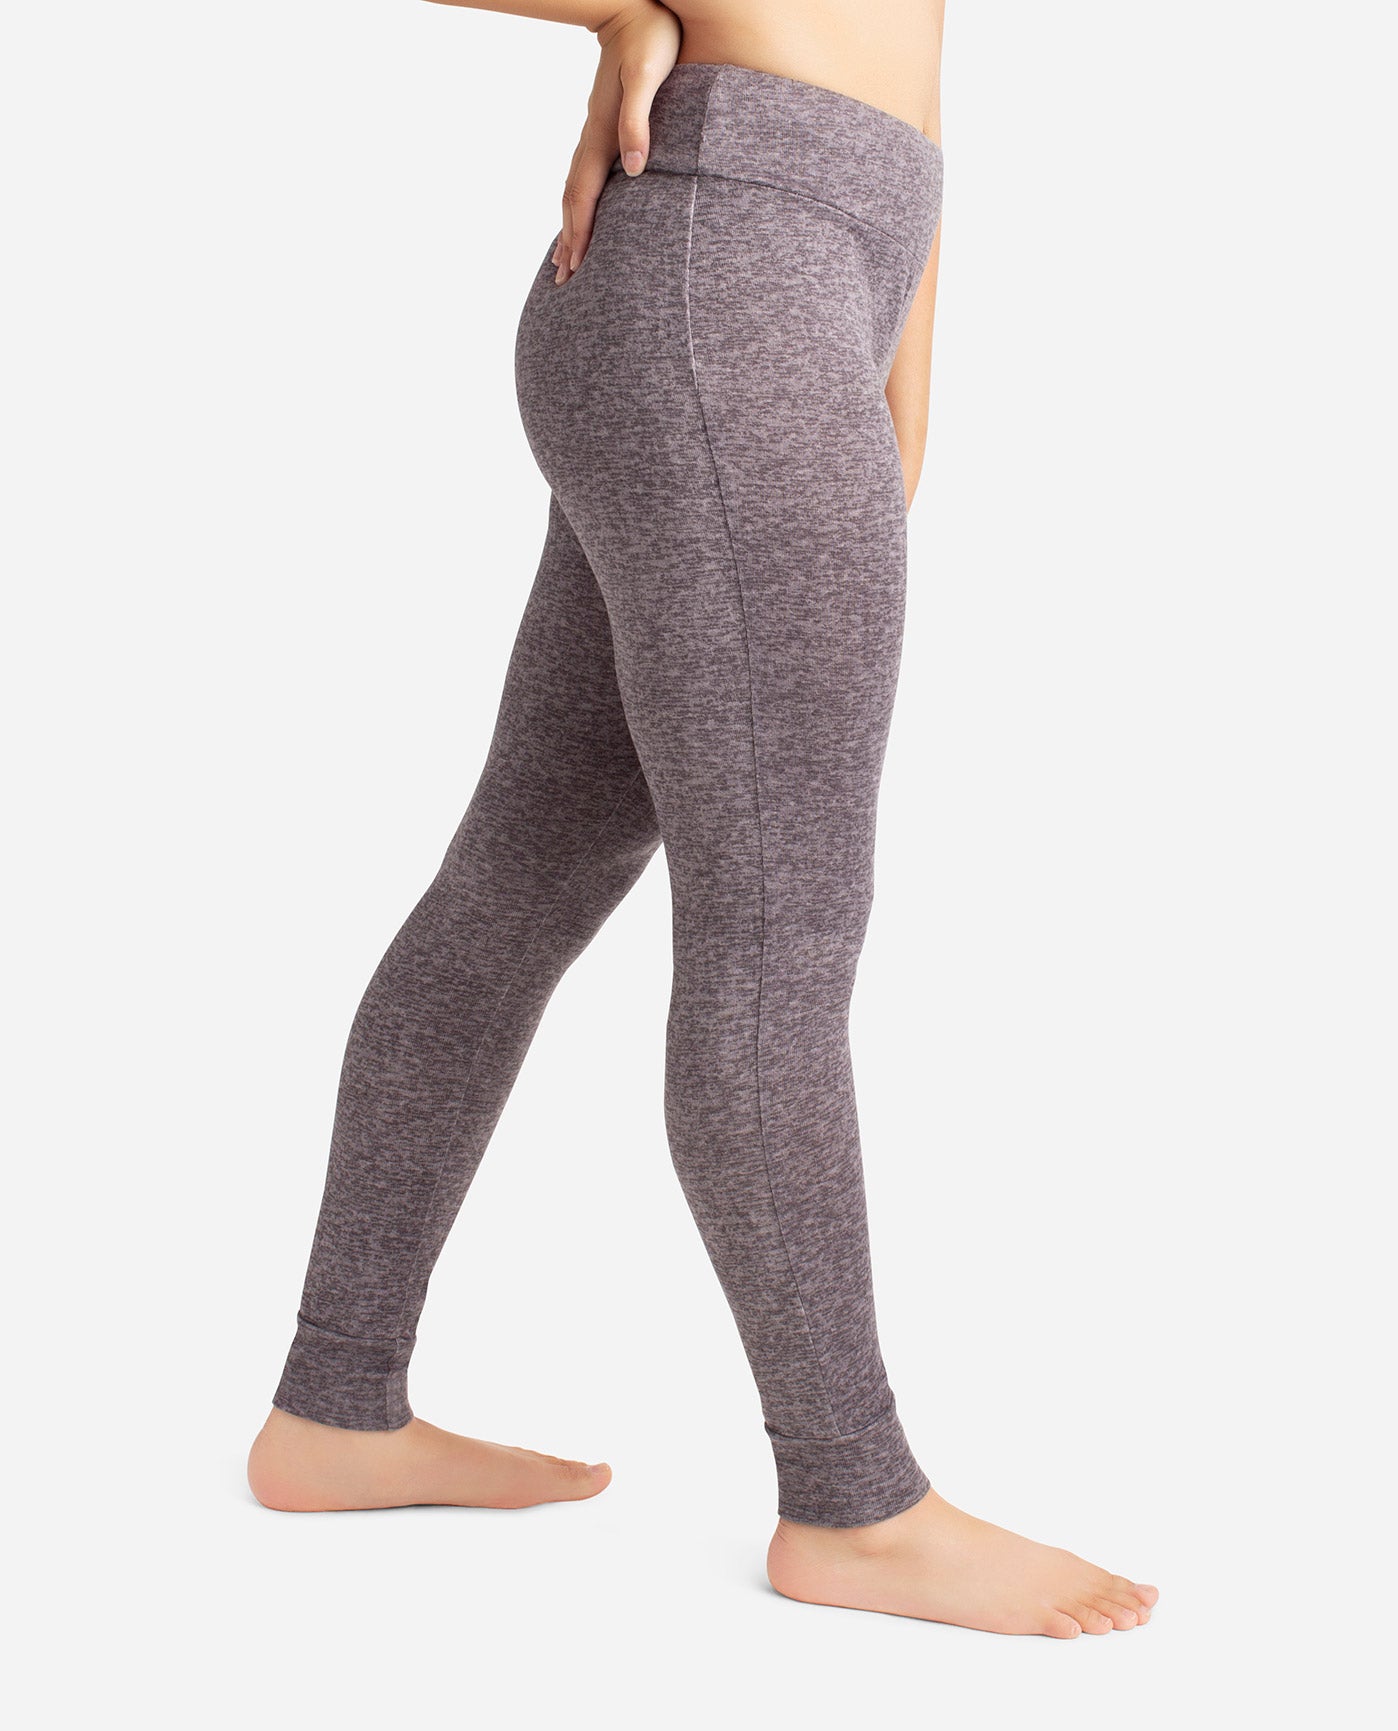 Danskin Women's Charcoal Gray Yoga Pants Sz XL 